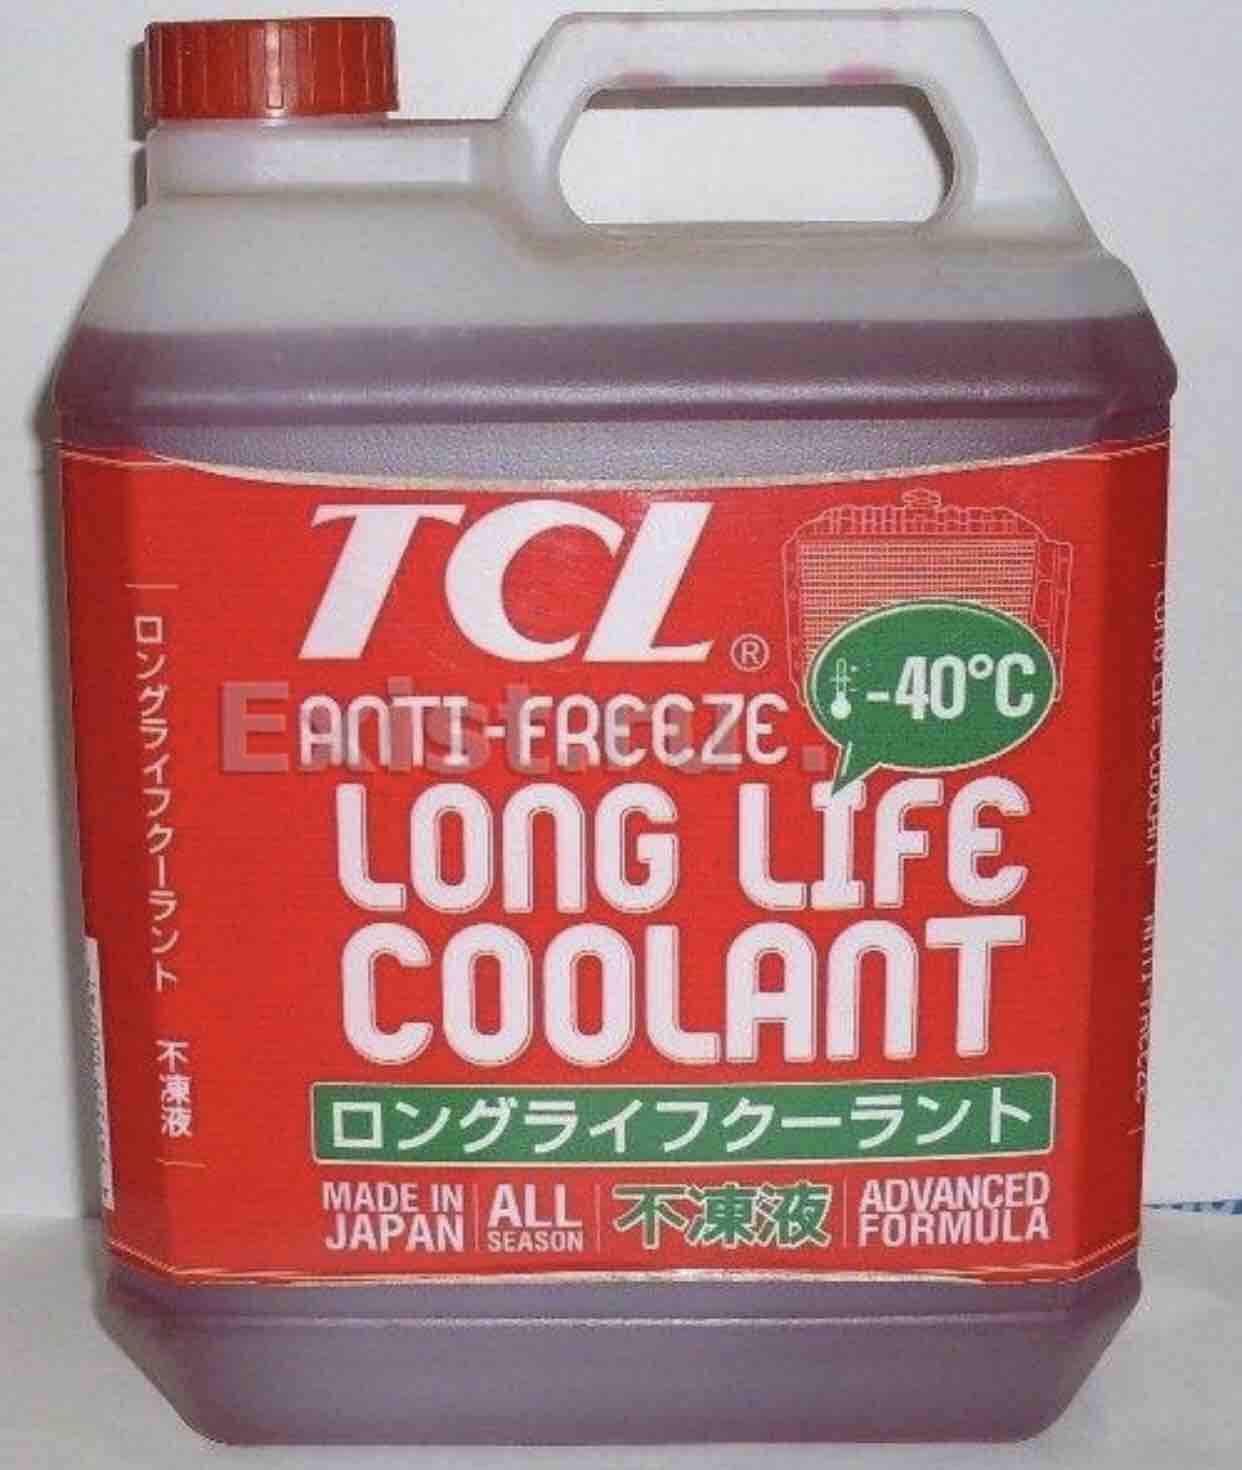 Long life coolant red. Антифриз TCL long Life Coolant -40 c. Антифриз long Life Coolant красный. Антифриз TCL long Life Coolant LLC, зеленый. TCL llc01236.